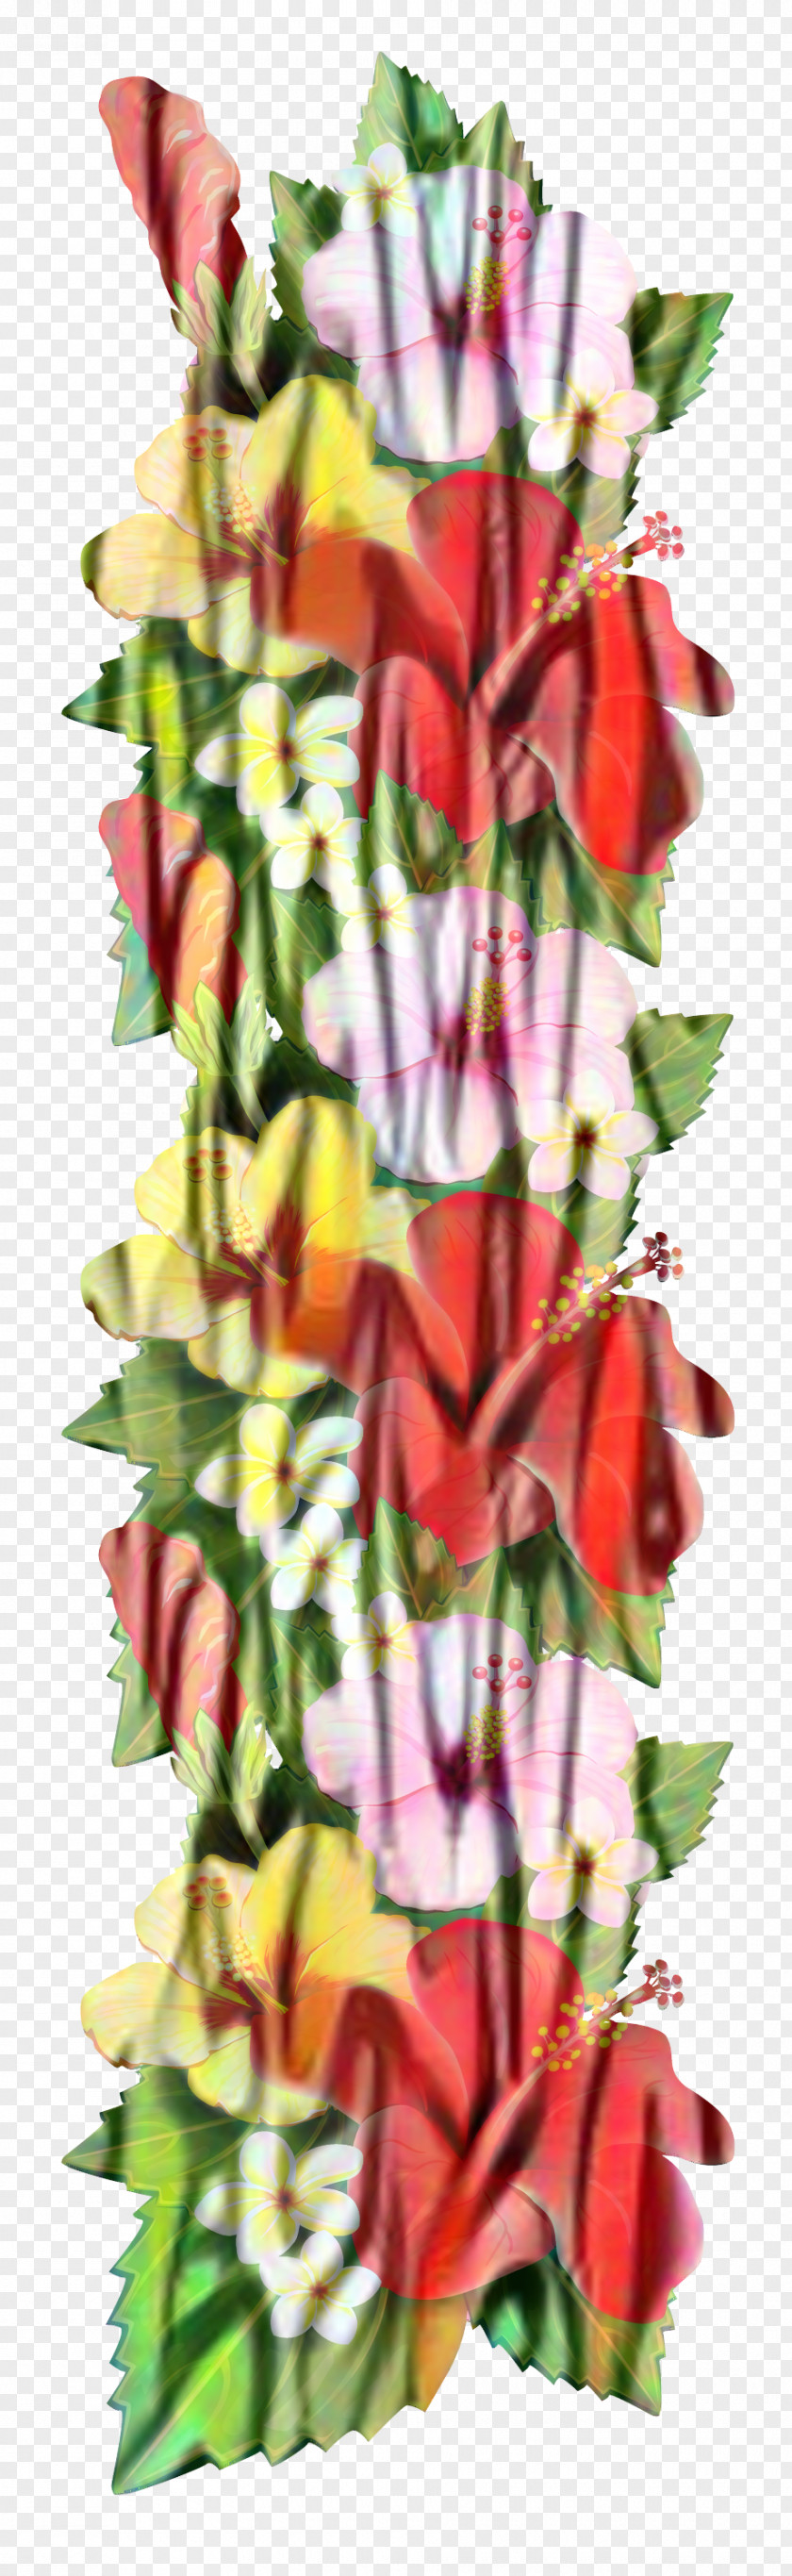 Floral Design Cut Flowers Flower Bouquet Plant Stem PNG